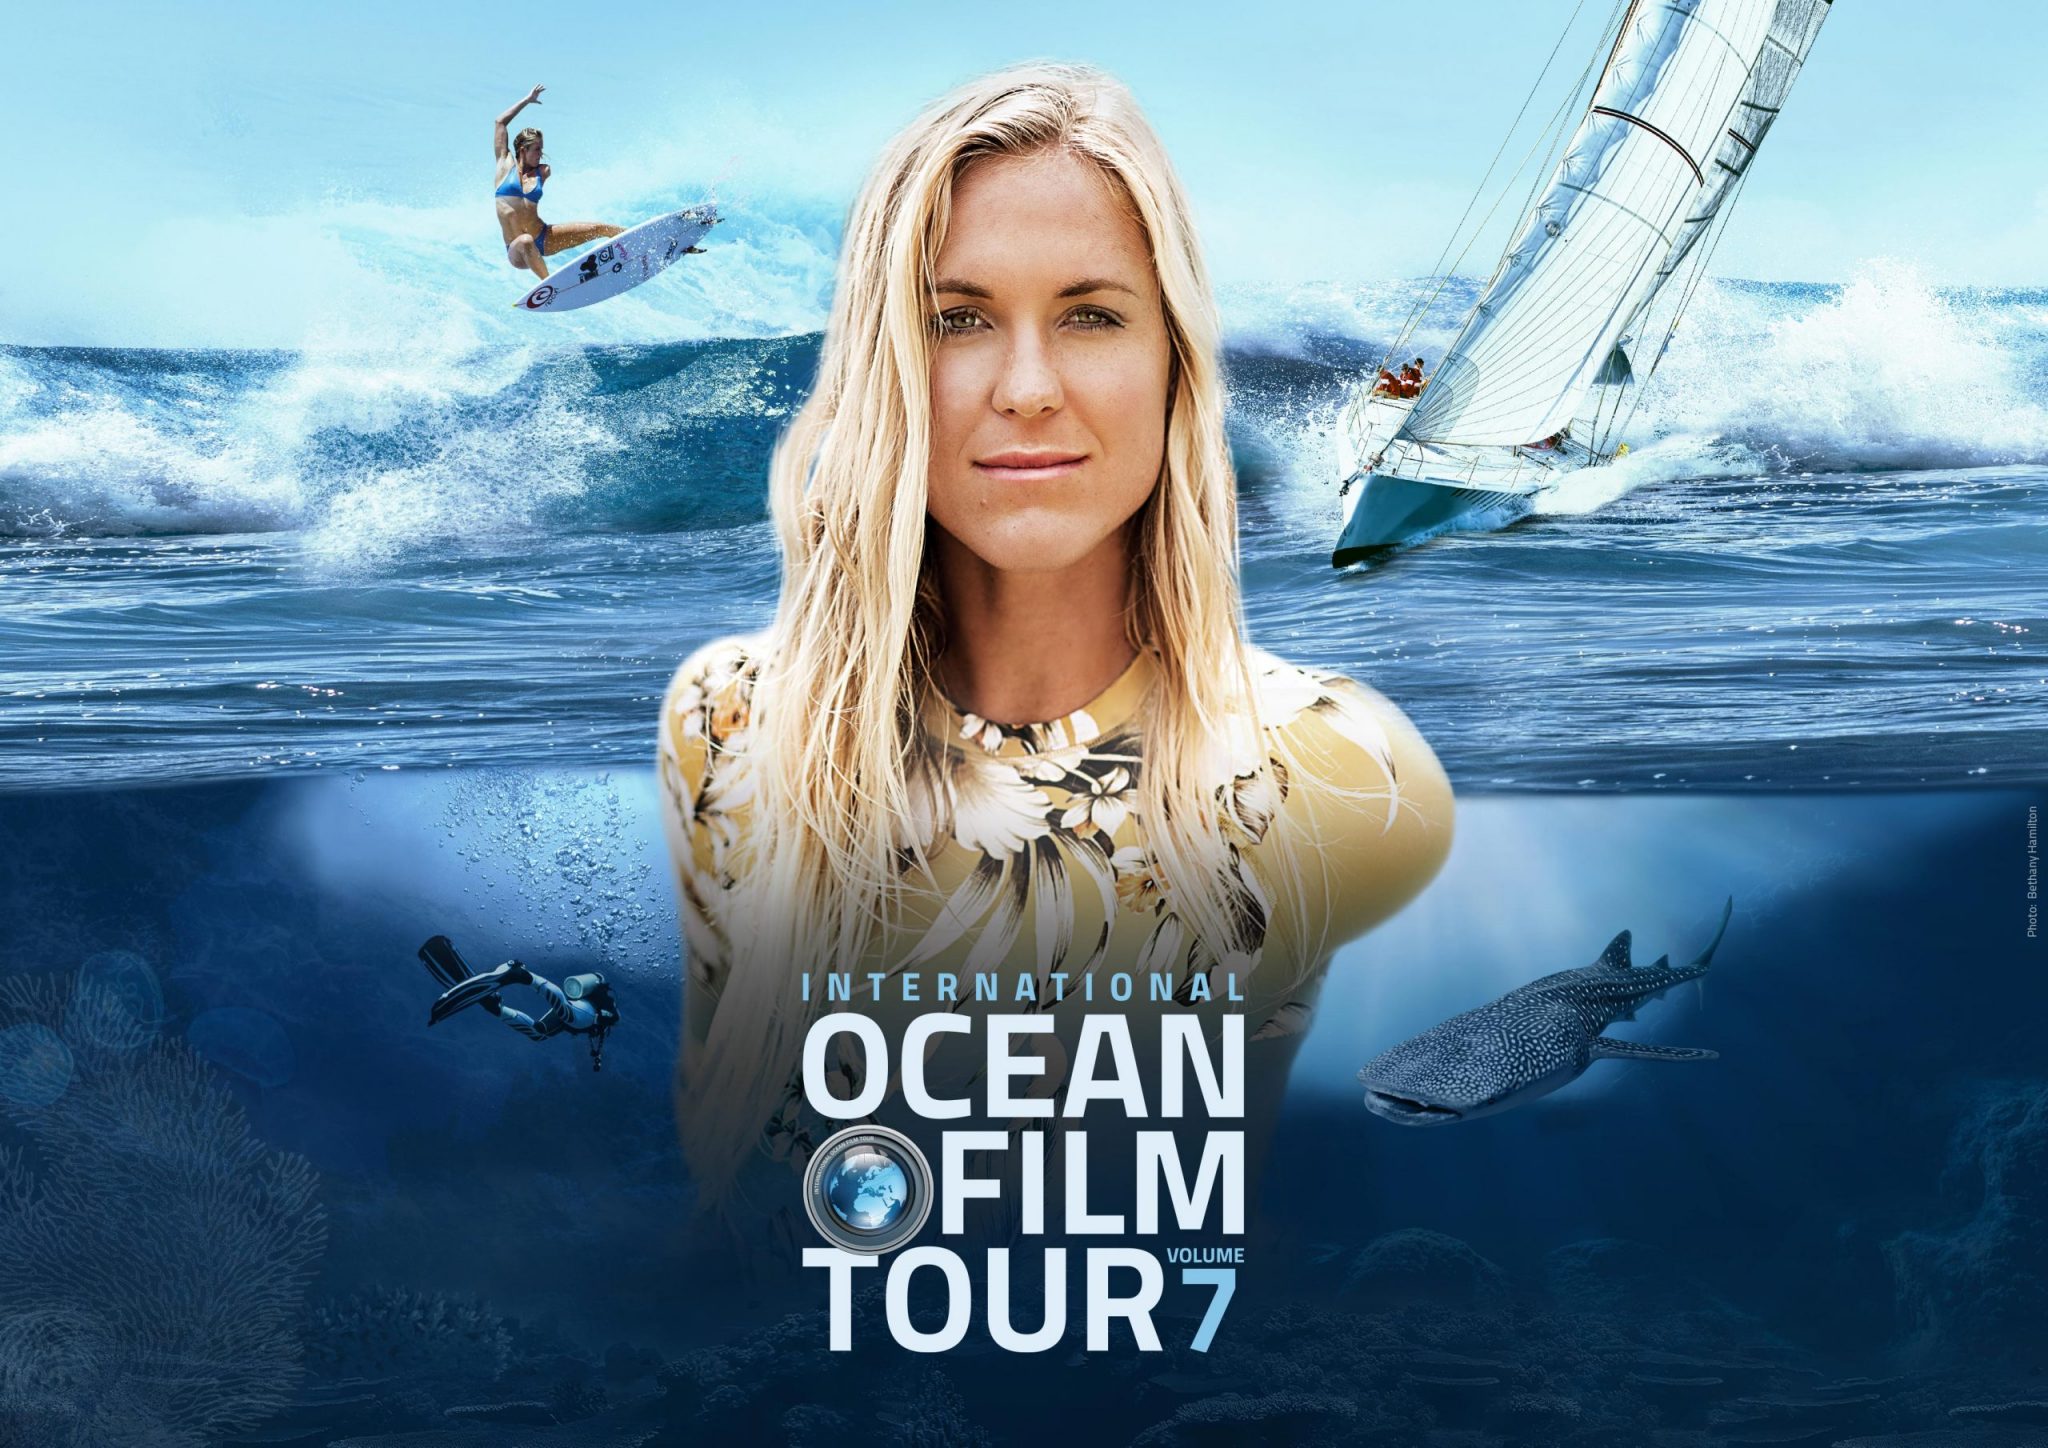 ocean film tour kino